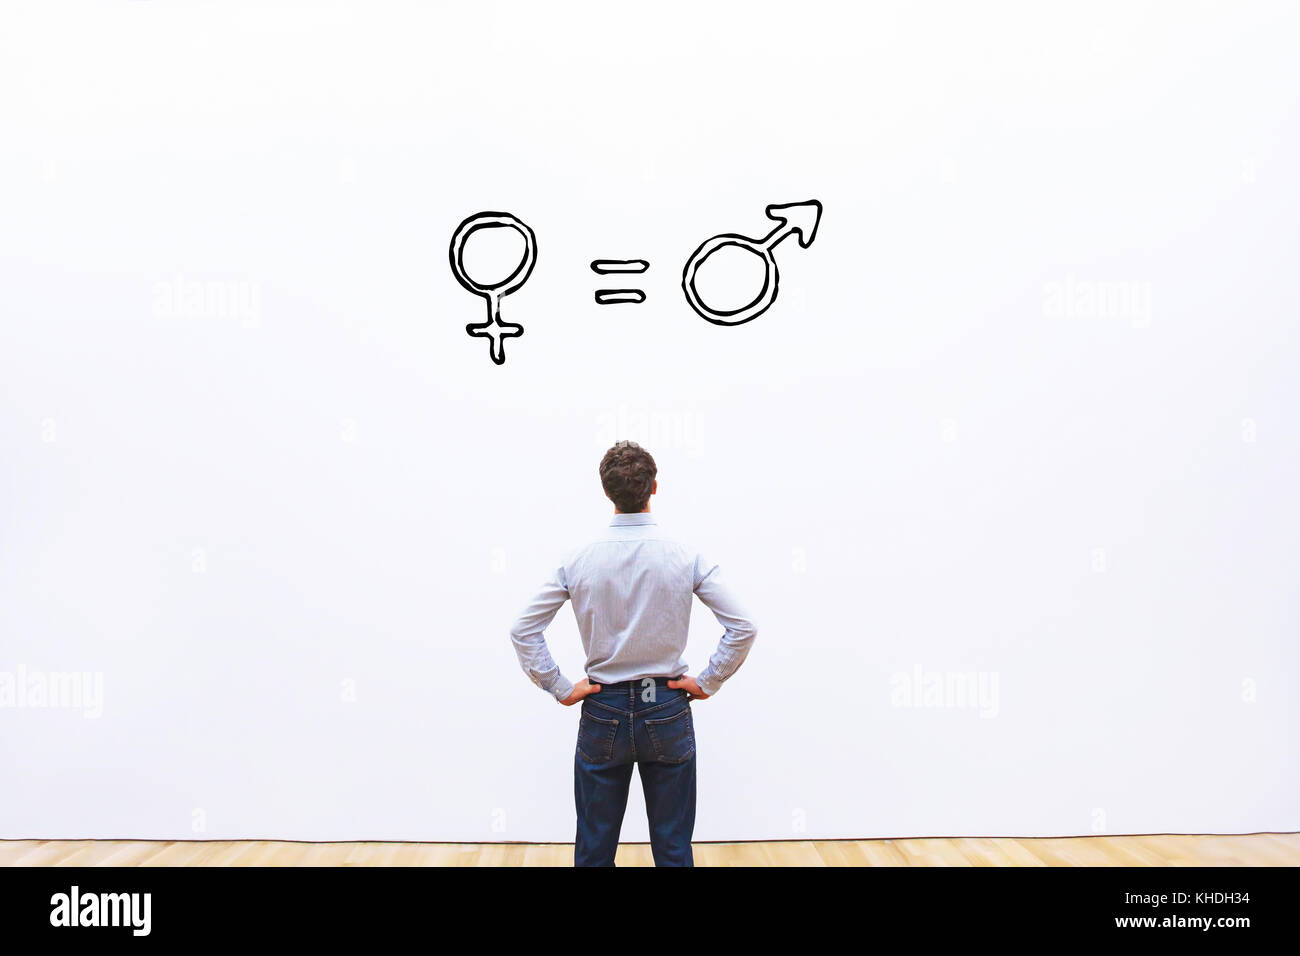 El concepto de igualdad de género, el hombre y la mujer son iguales Foto de stock